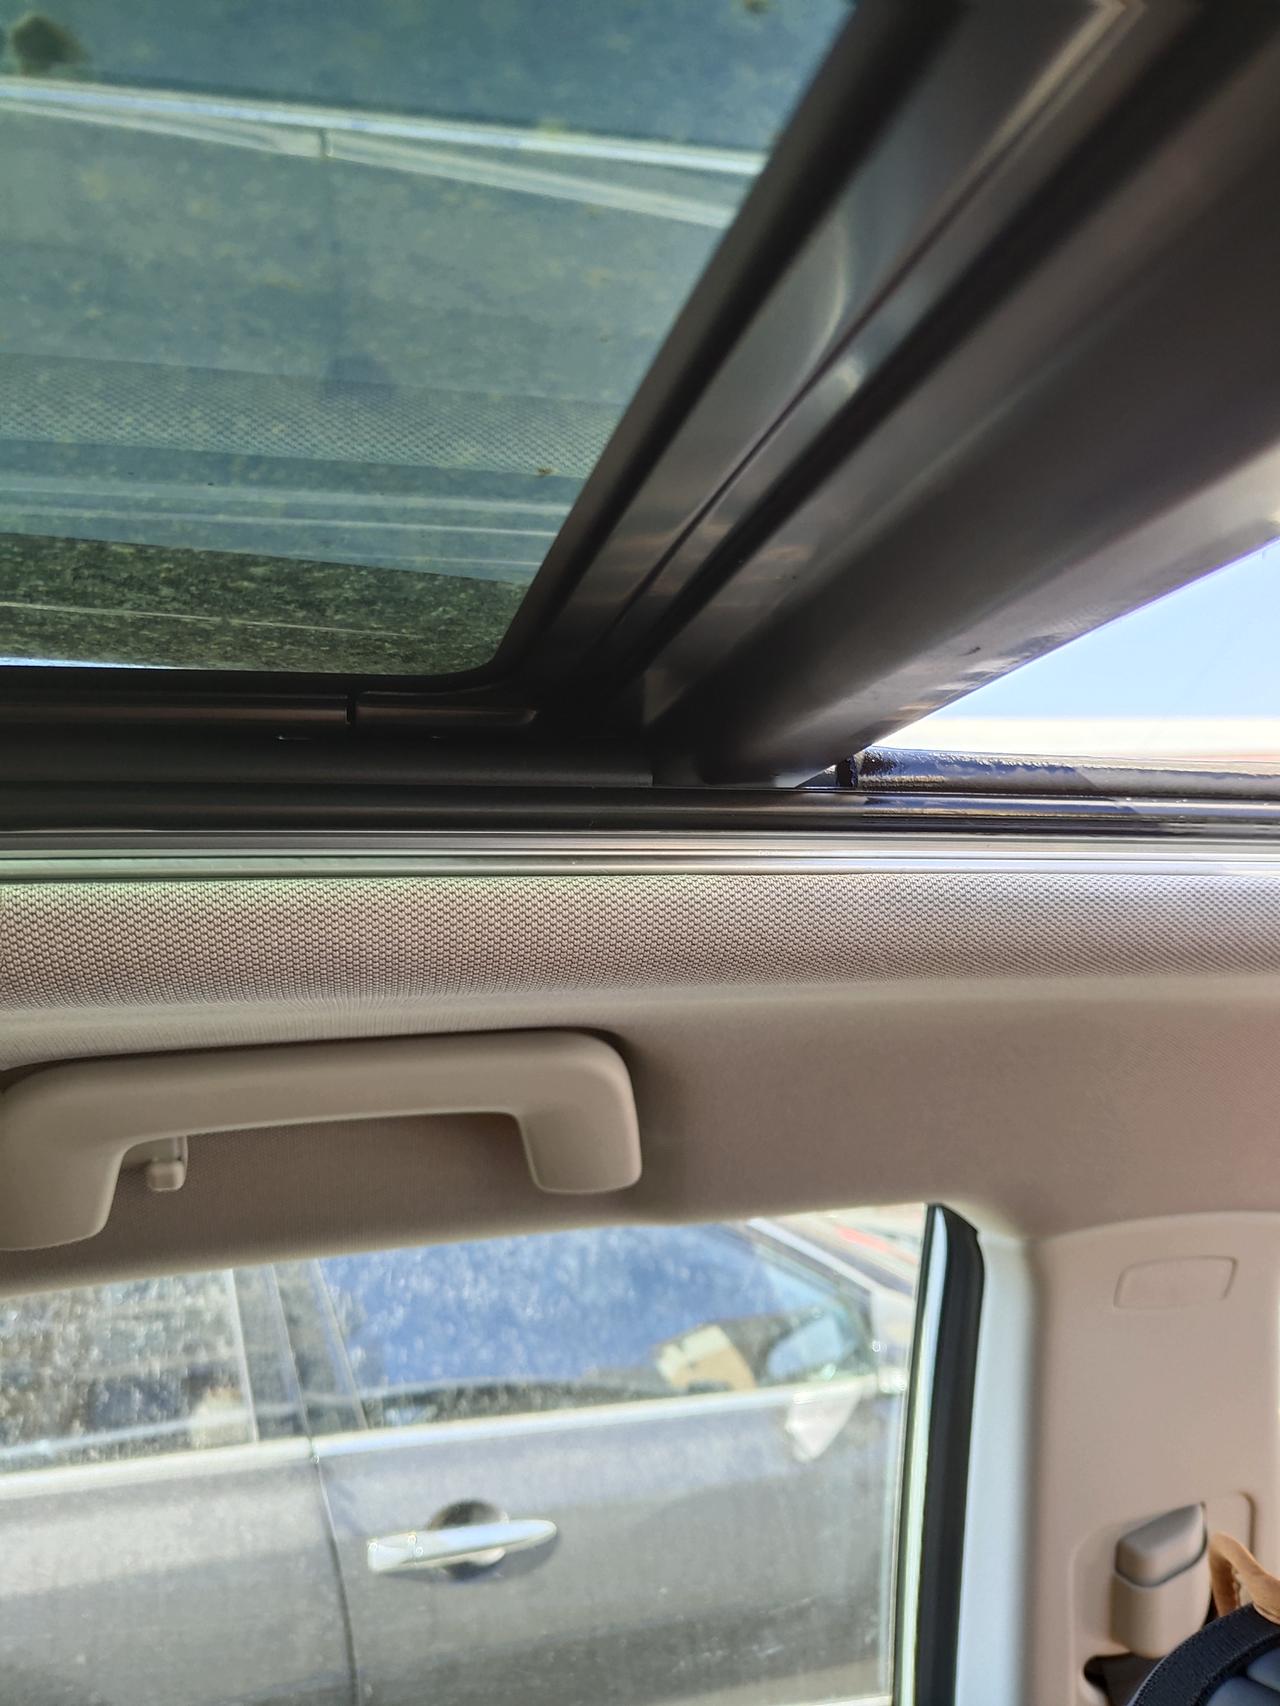 捷途X70 PLUS 哪位朋友知道驾驶位后面天窗有打玻璃或者打铁的细碎声音？一有点颠簸就有，特别烦人的细碎声音，类似于有